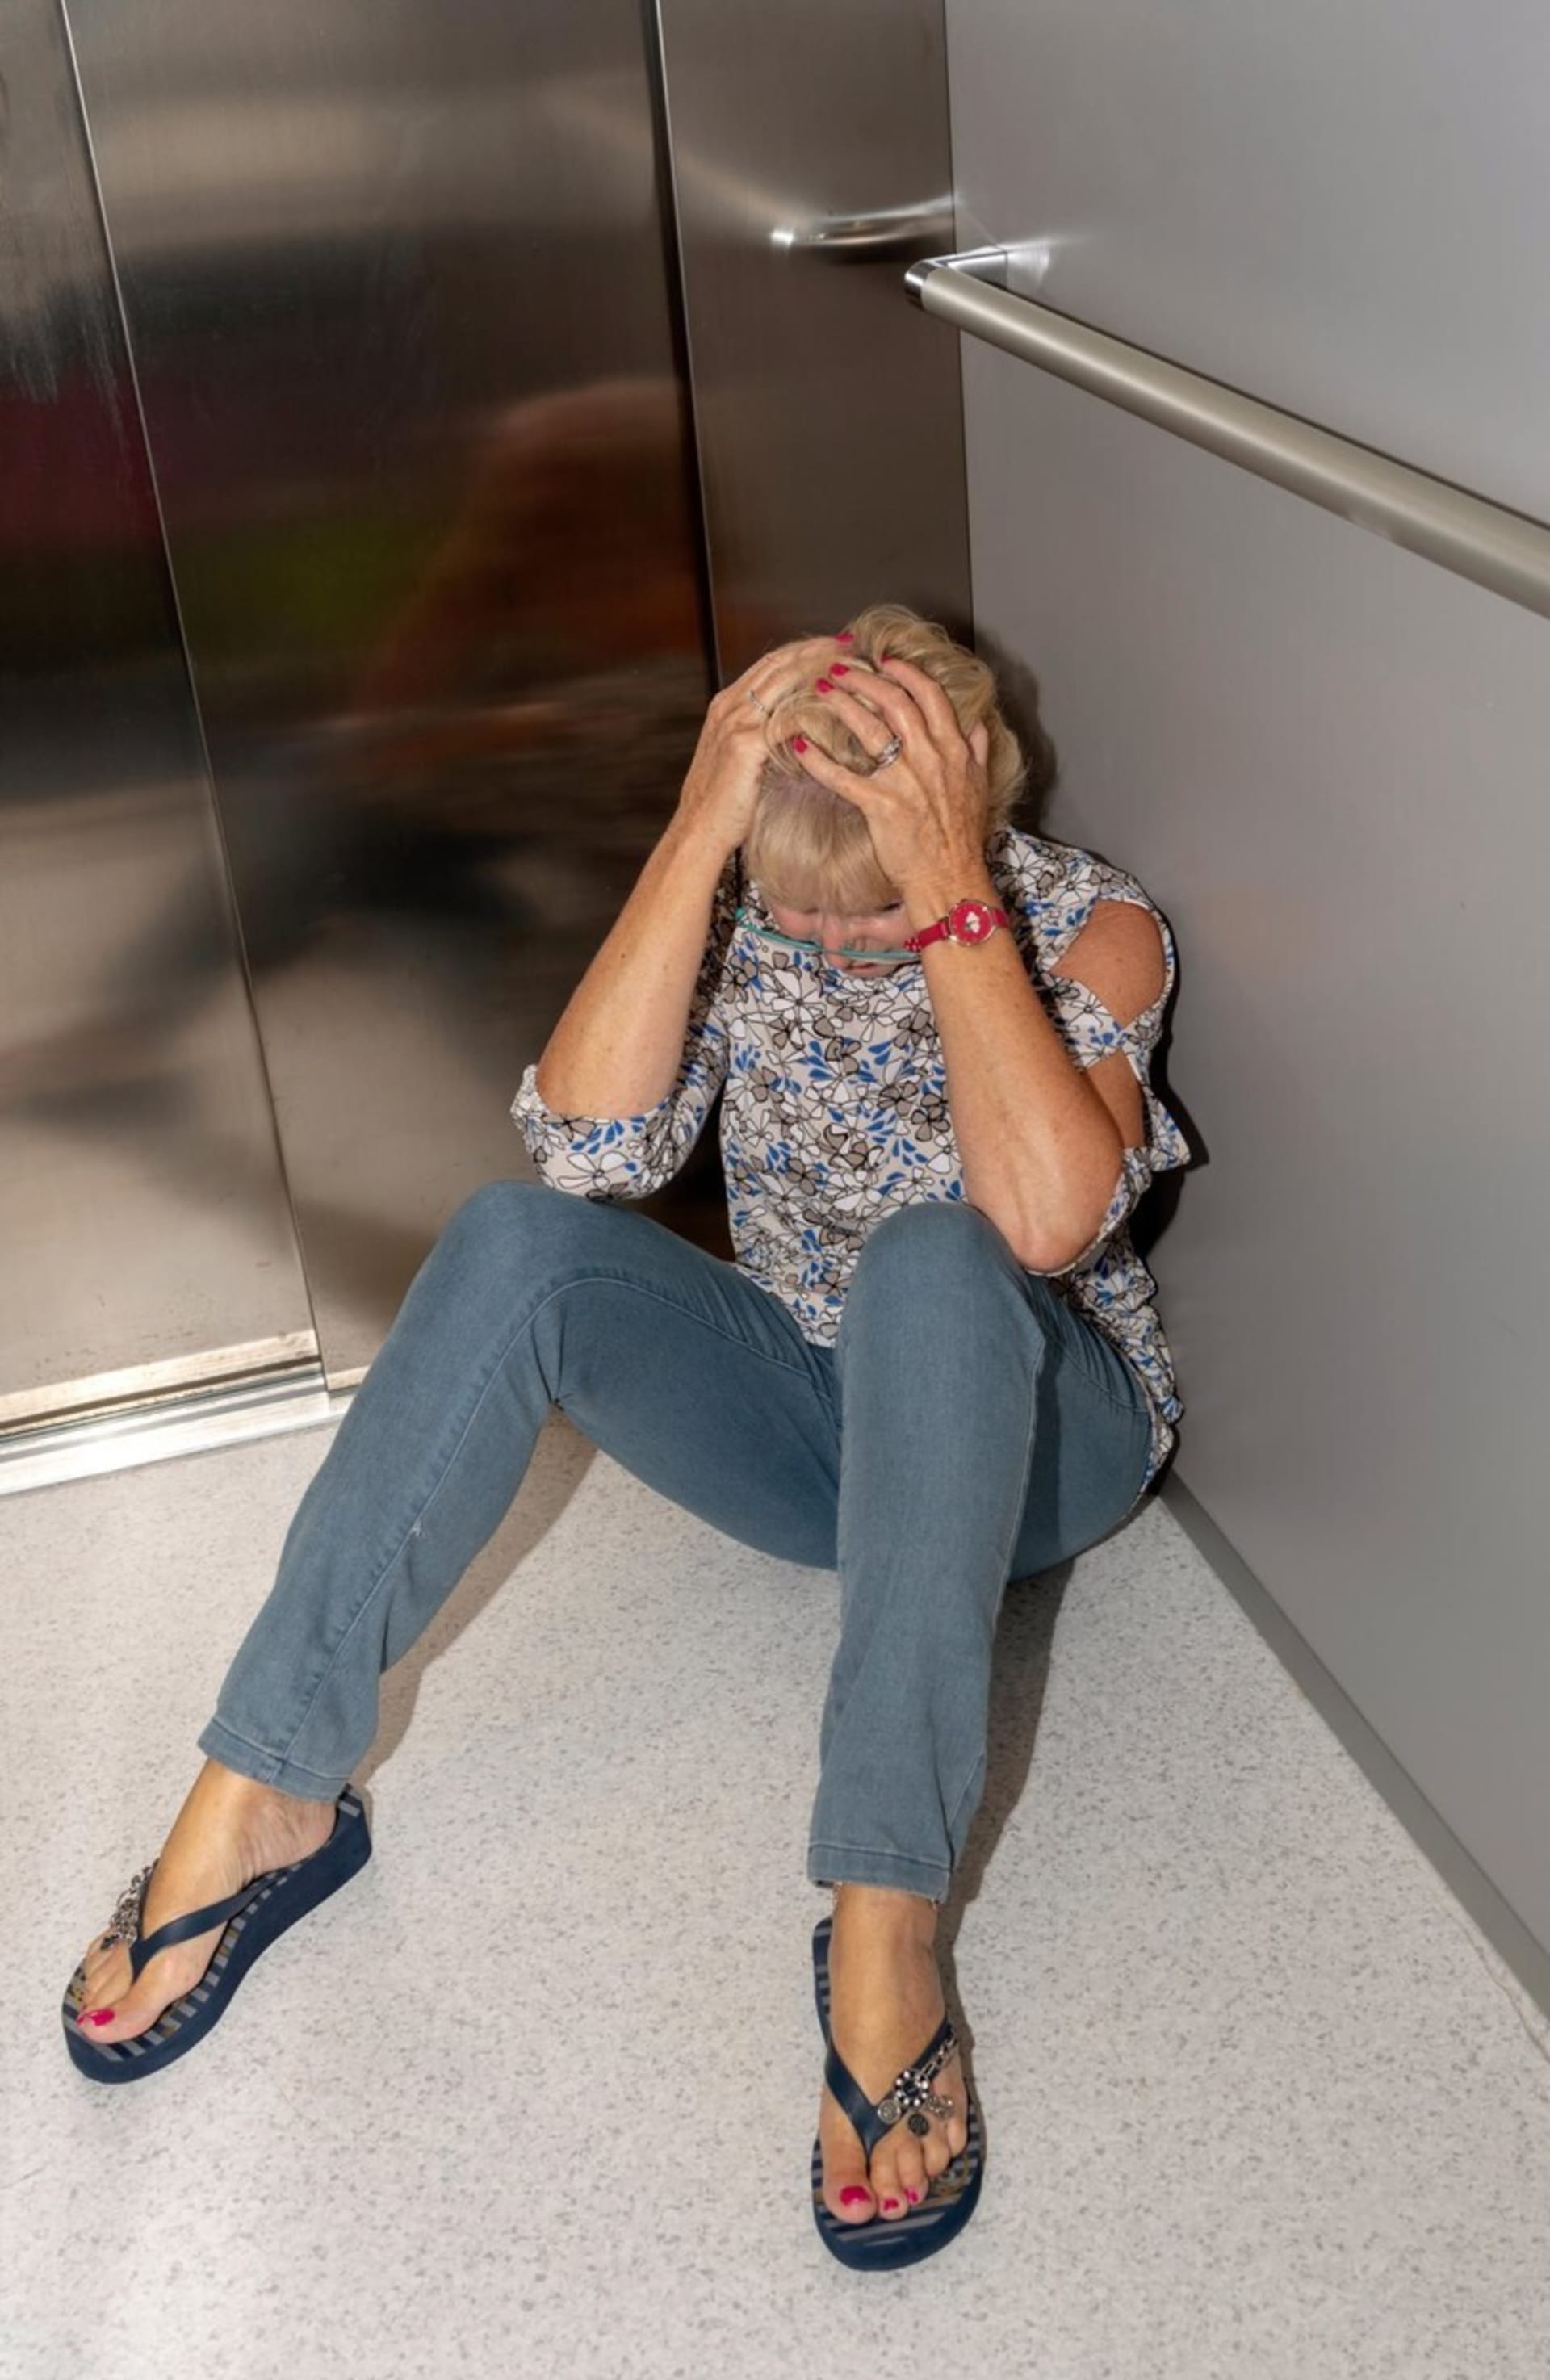 Výtah se s dvojicí žen zasekl při výjezdu do druhého patra (ilustrační foto)